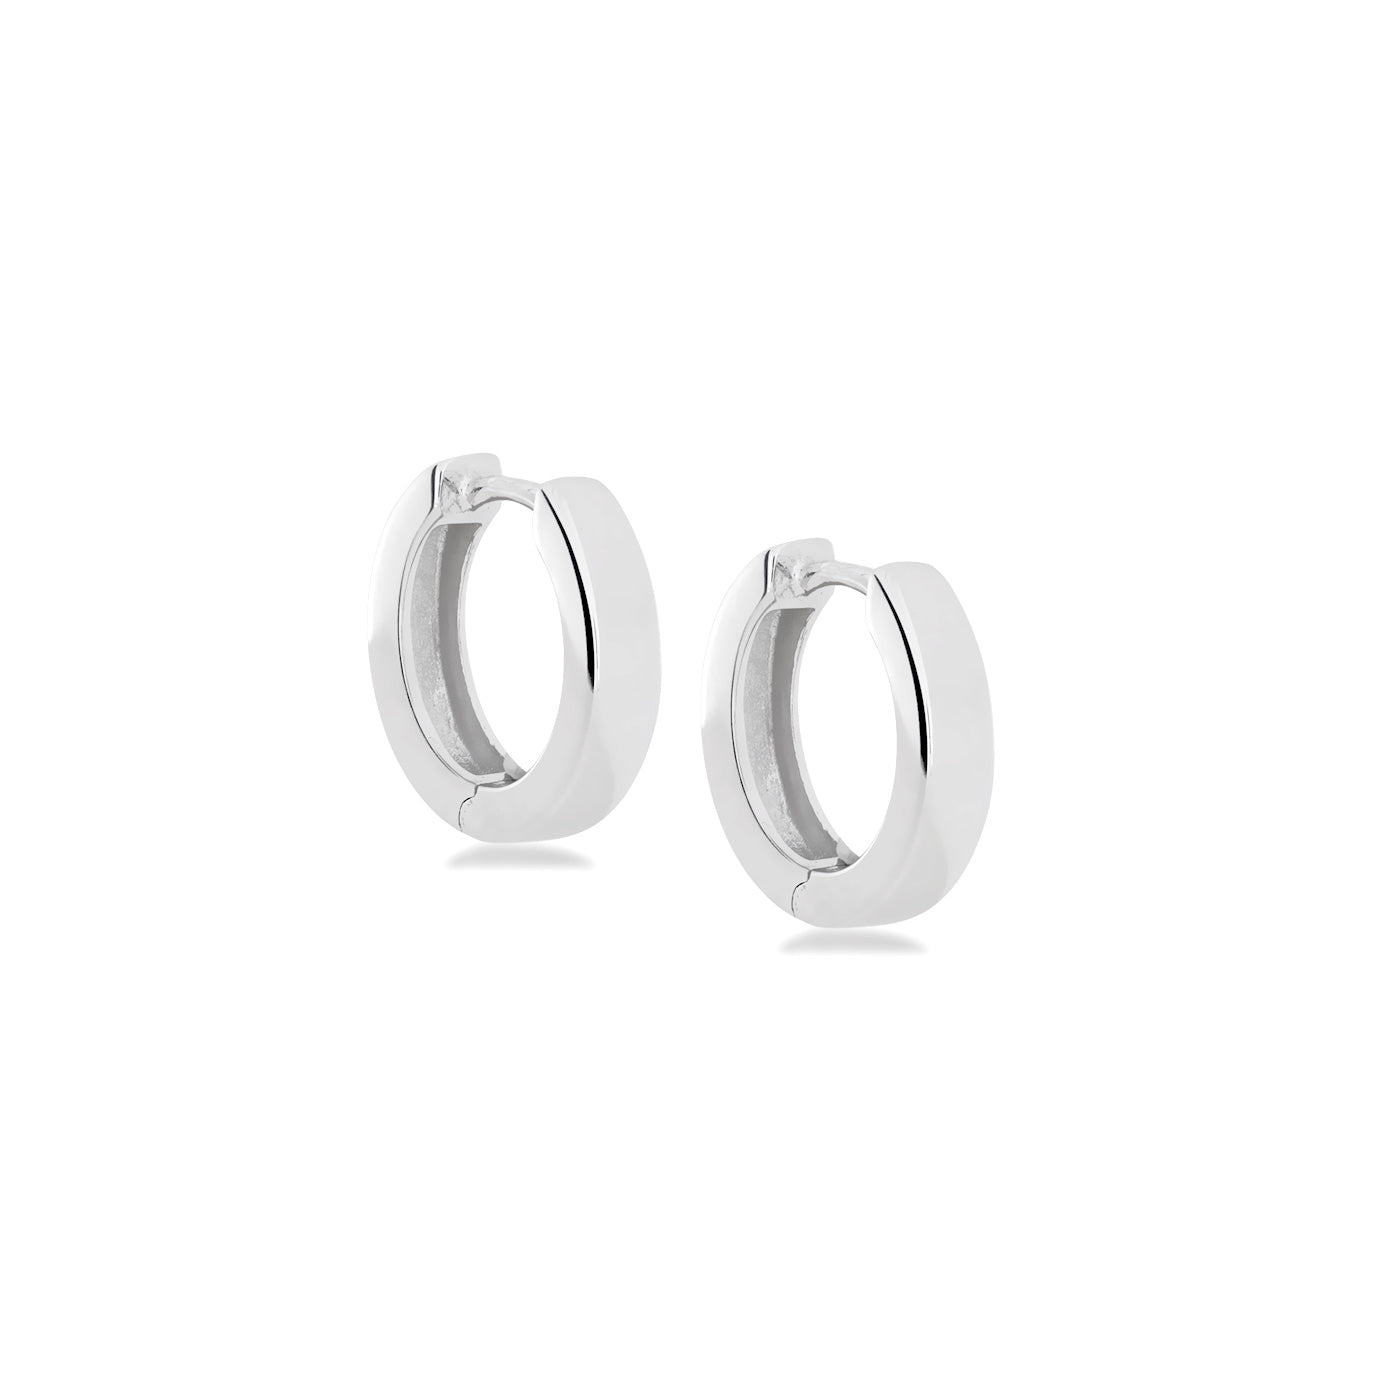 Hinge Hoop Earrings - Medium Squared